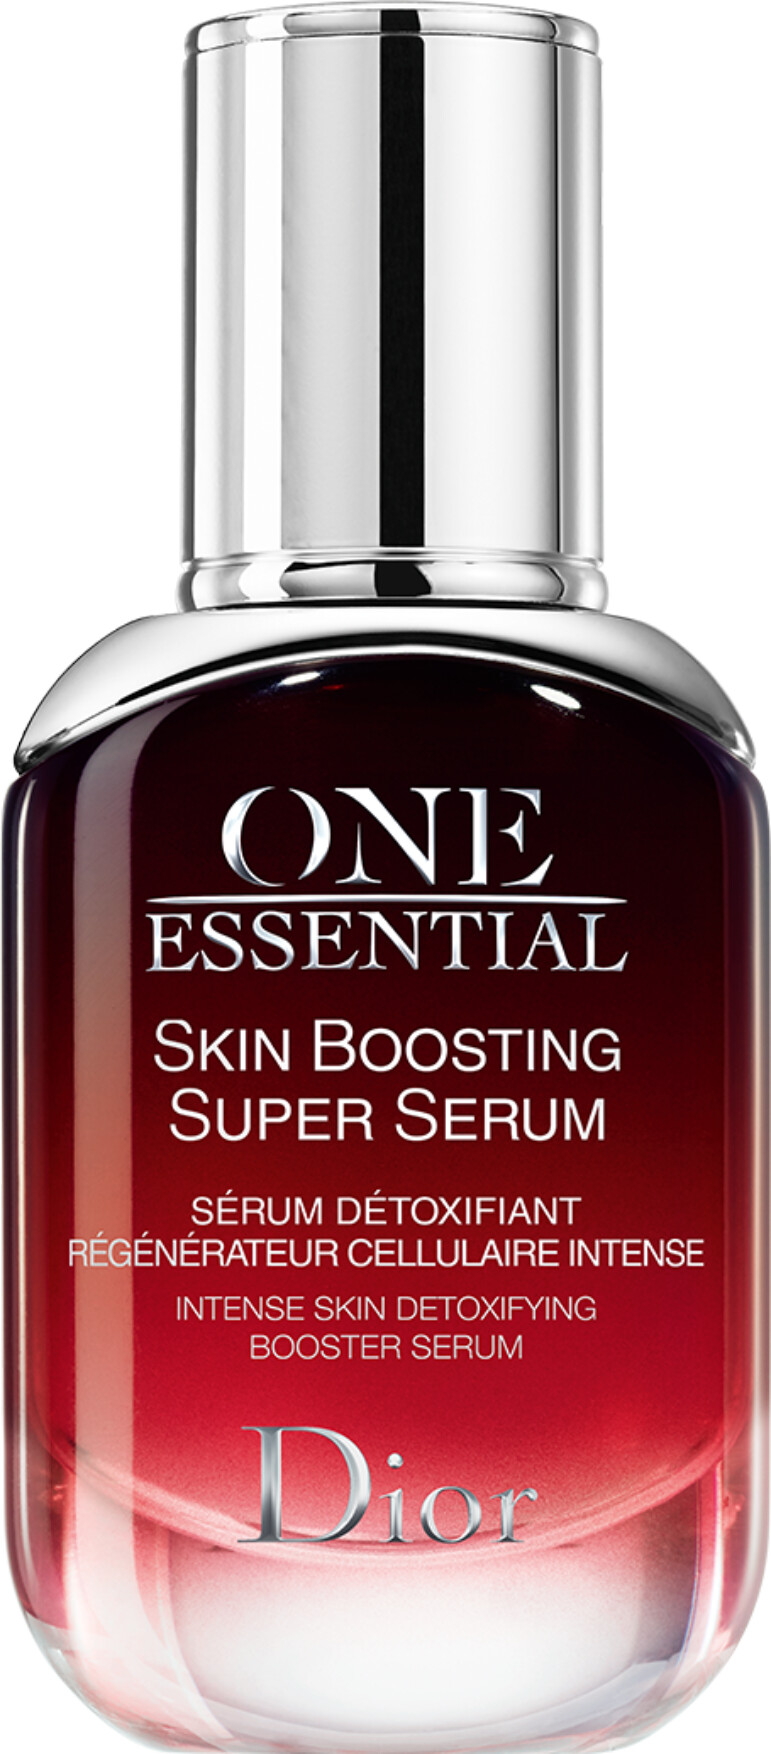 dior intense skin detoxifying booster serum